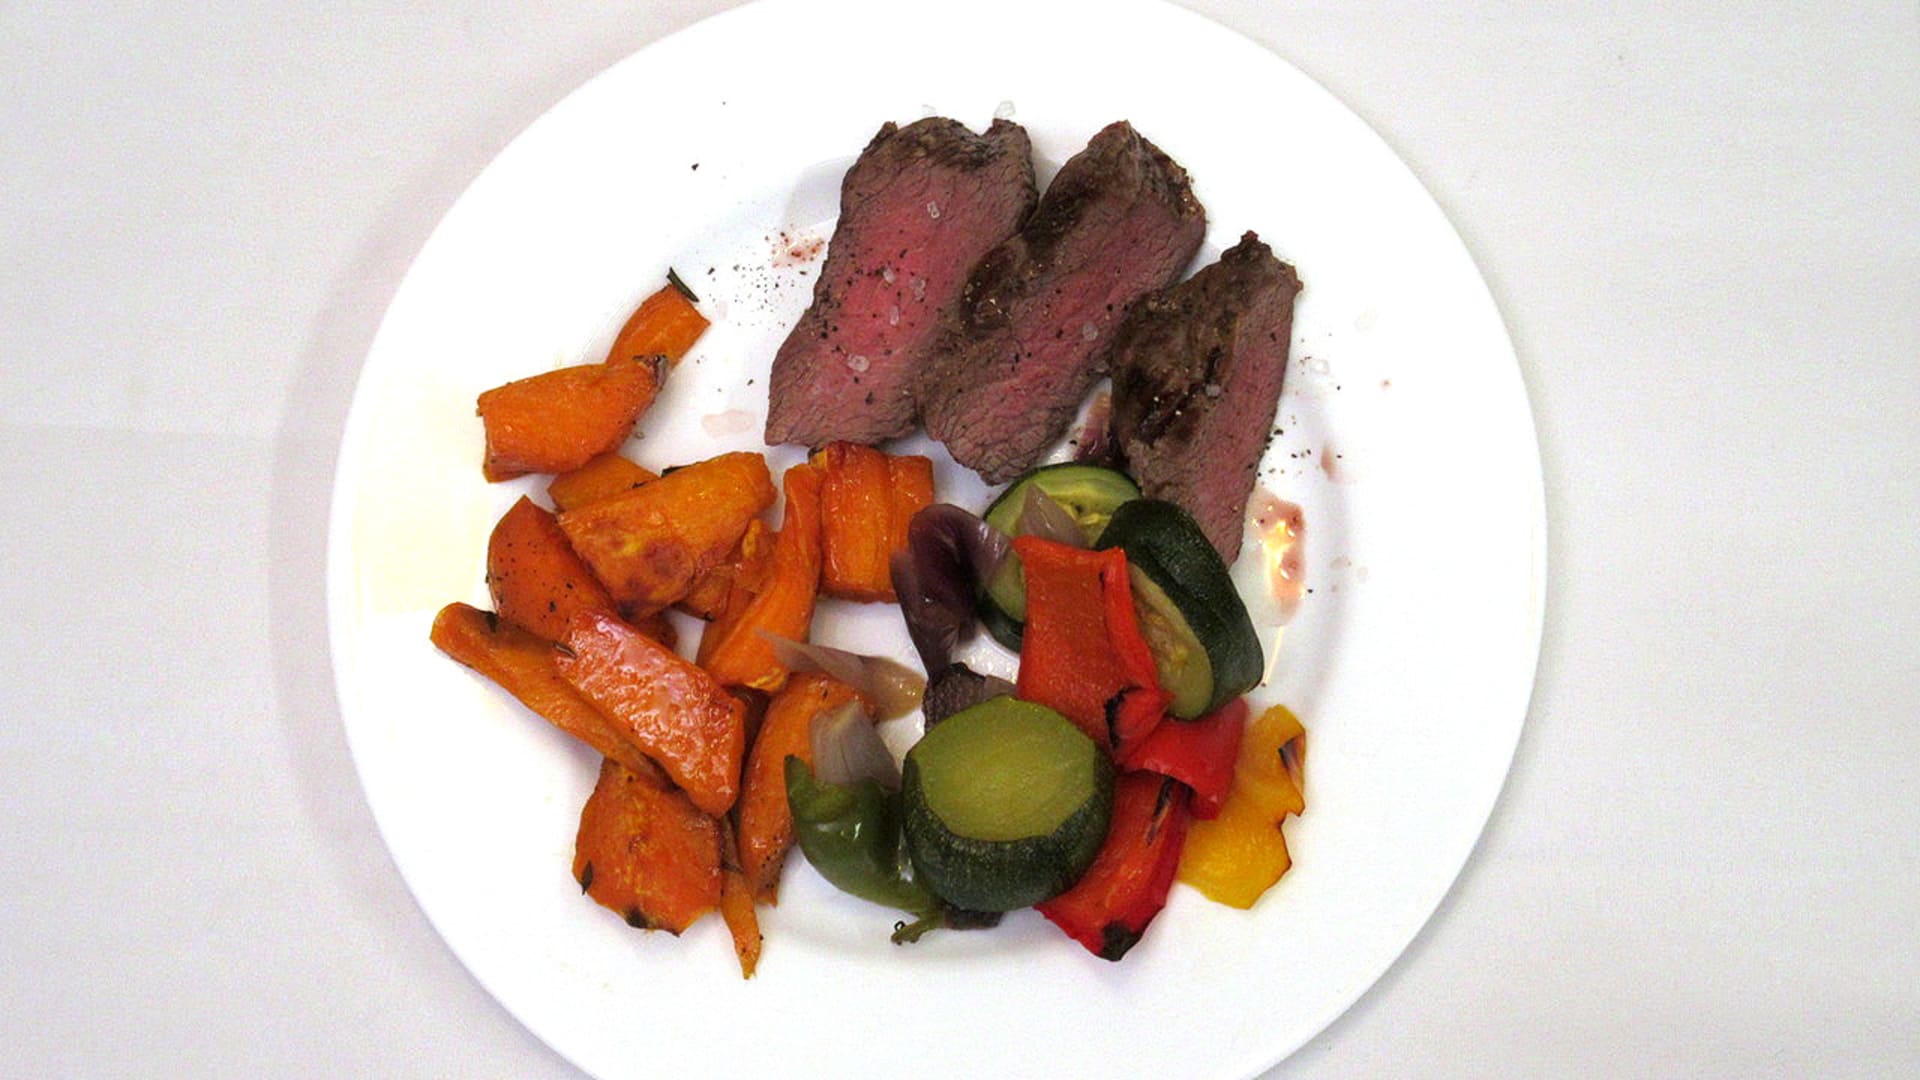 Pštrosí steak s grilovanou zeleninou, batátové hranolky, dva druhy omáček